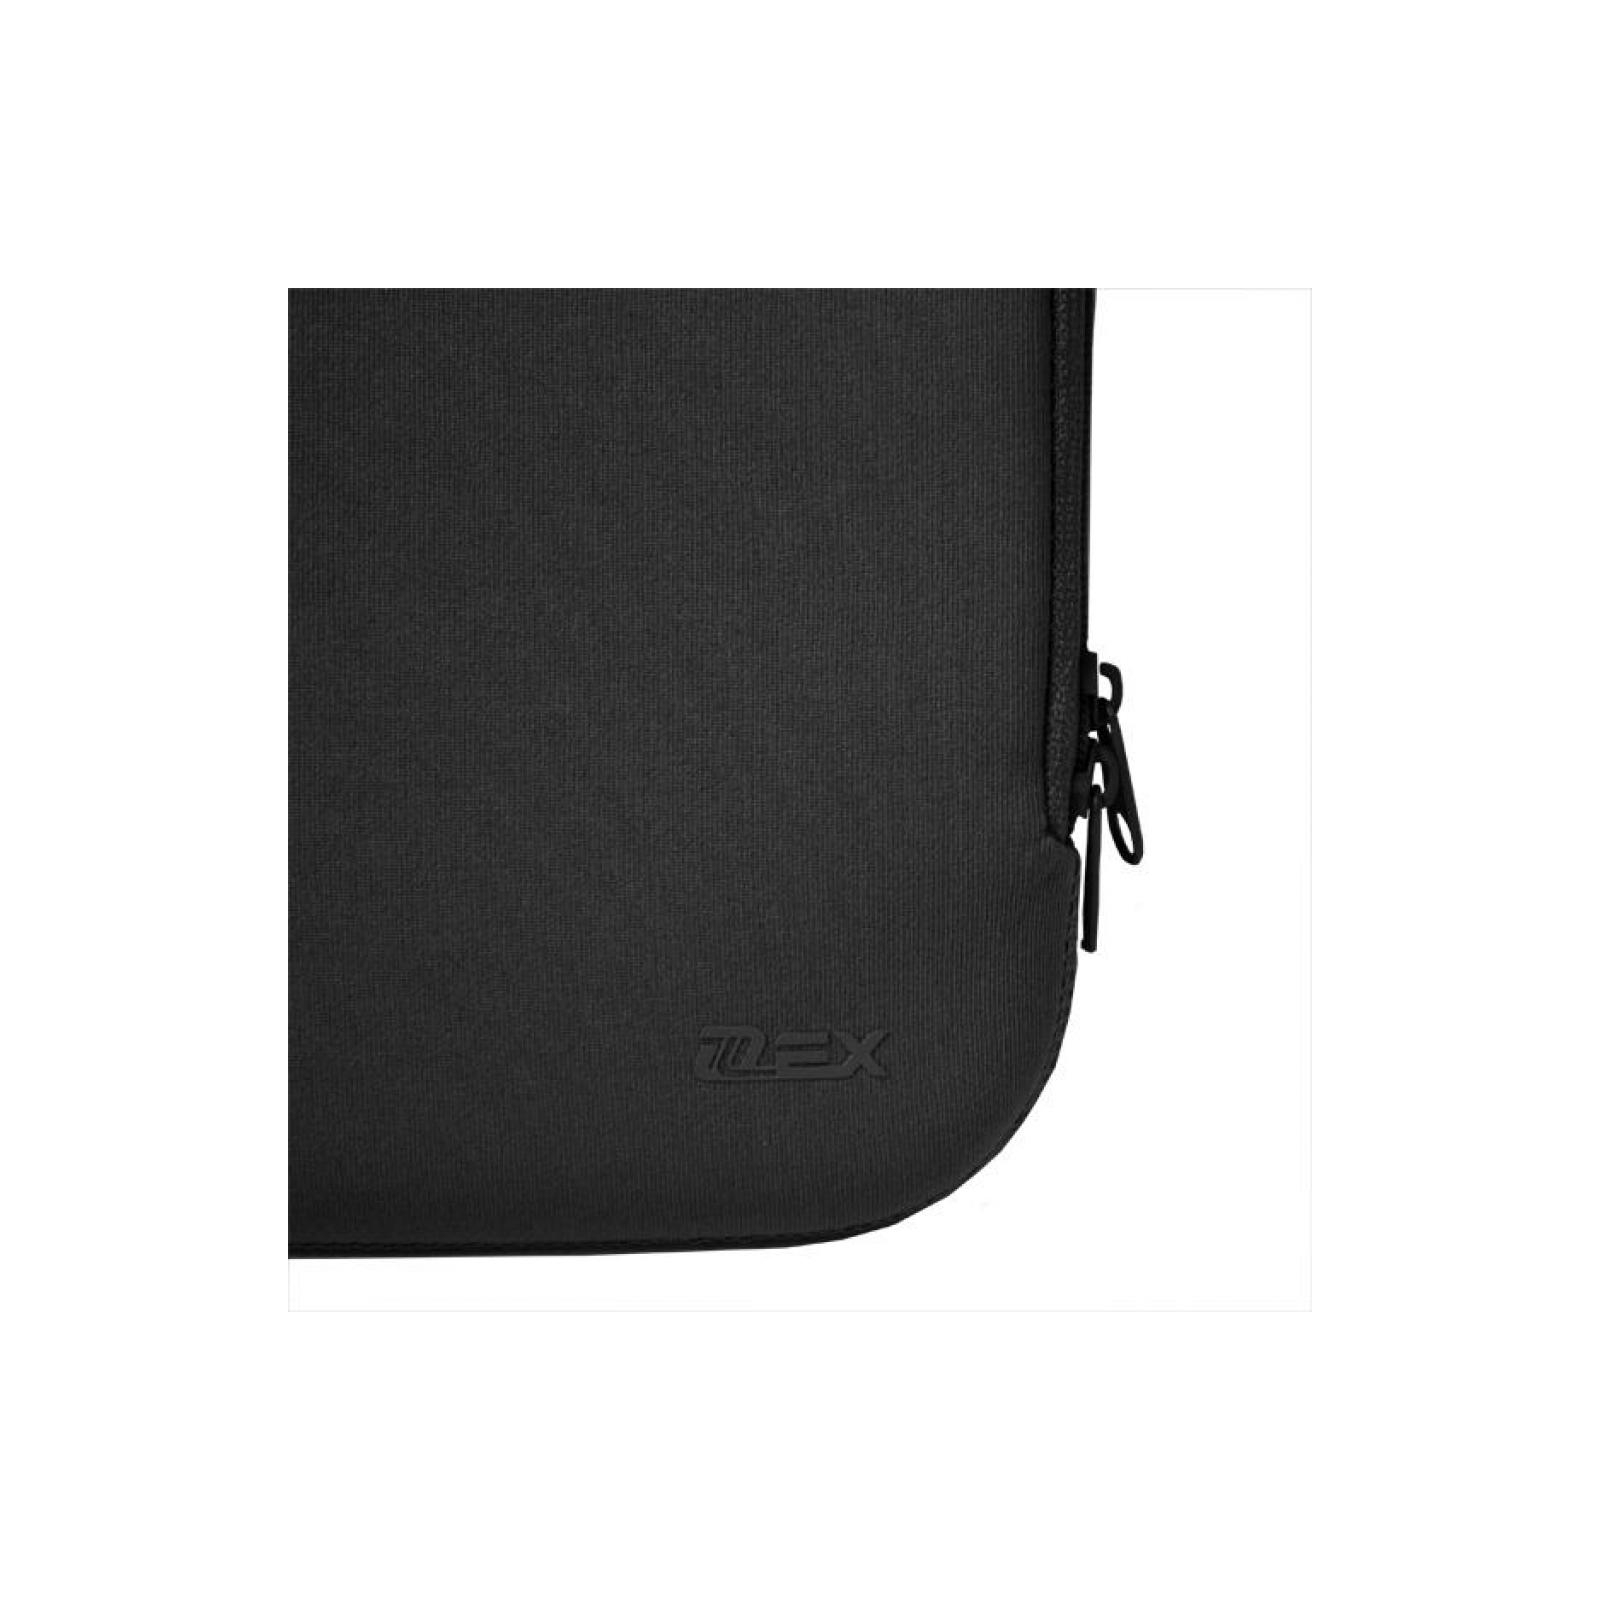 Чехол для планшета D-Lex 10' black 25*17*1.5 LXTC-3110-ВК (4372) изображение 5